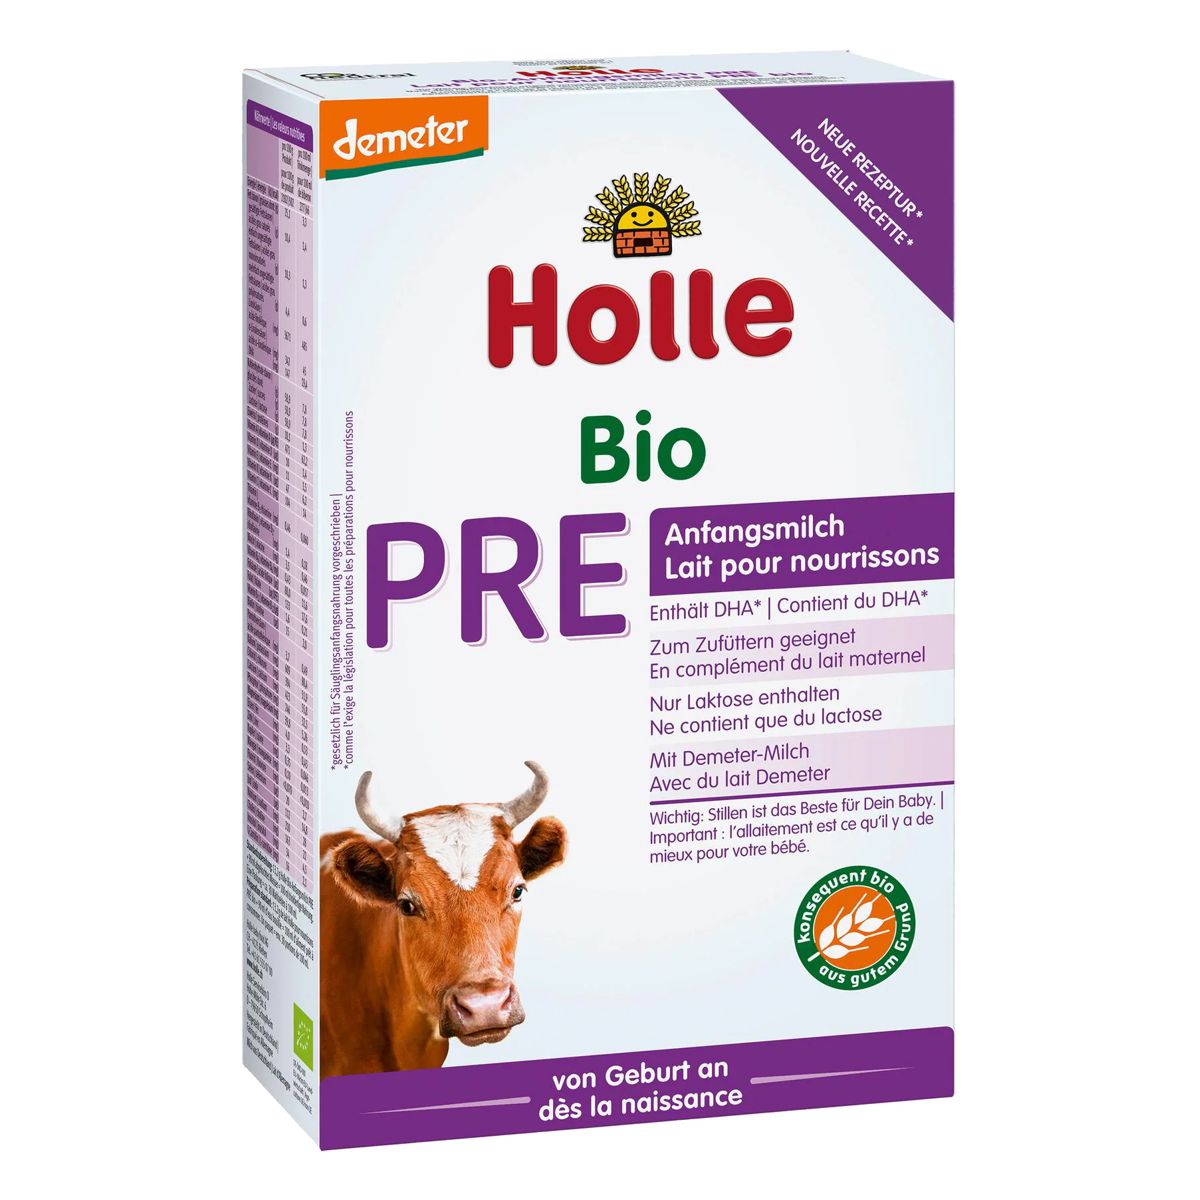 Holle_Bio_Anfangsmilch_PRE_400g_kaufen